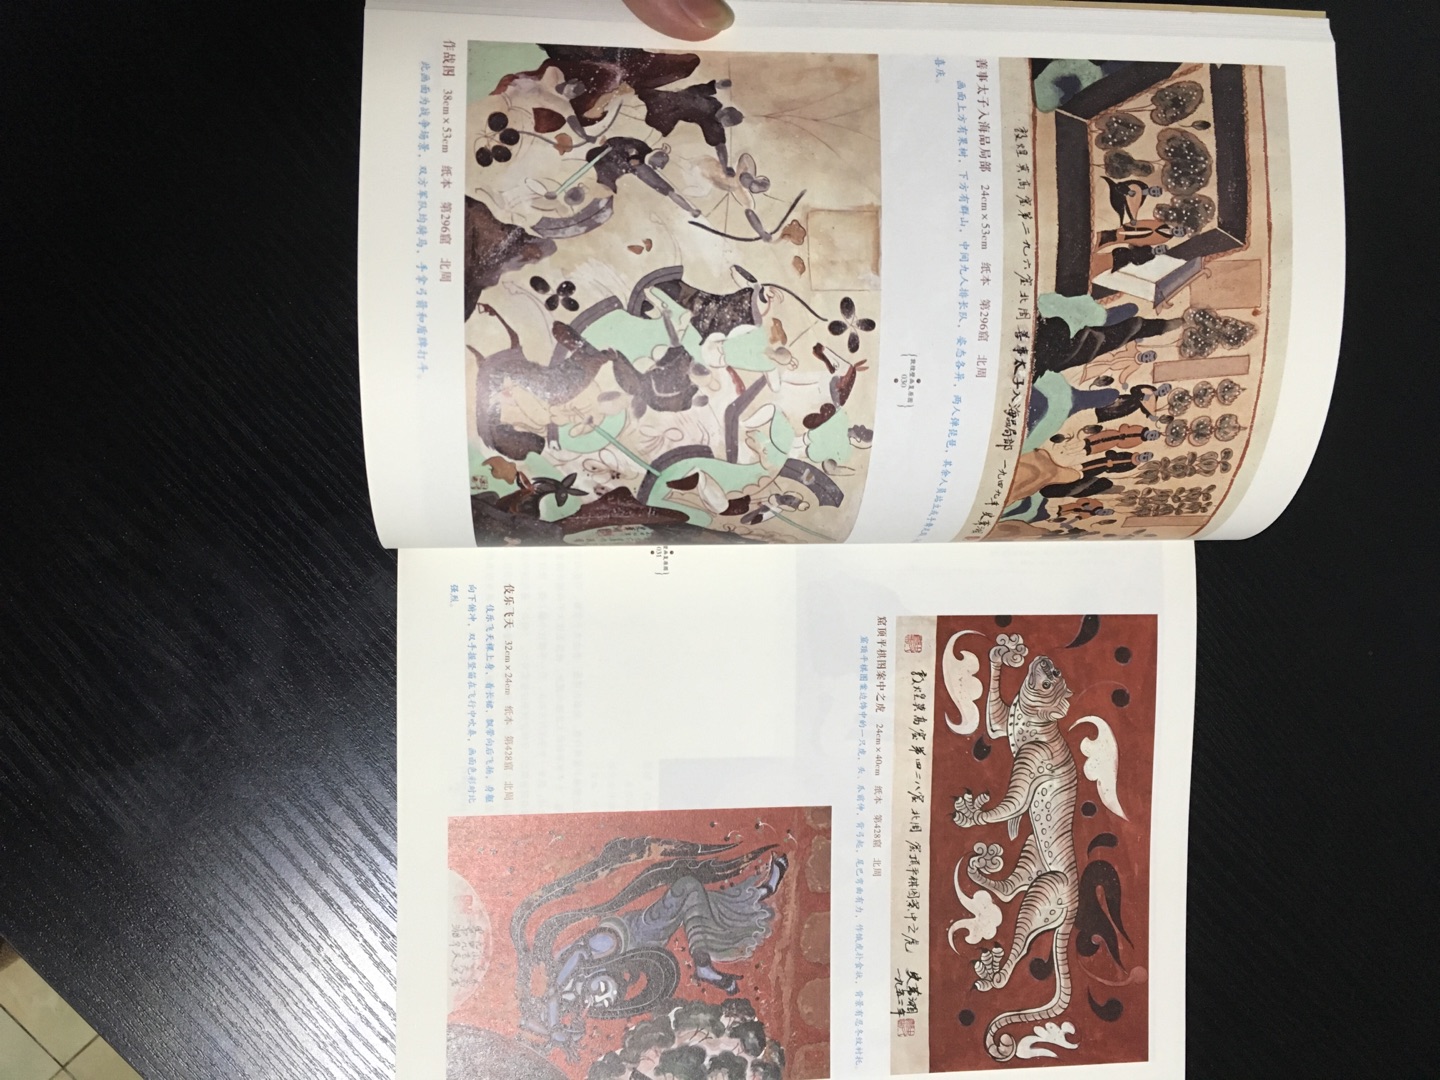 很精美的一本书，展示了中国绘画艺术的魅力。书籍质量值得点赞。